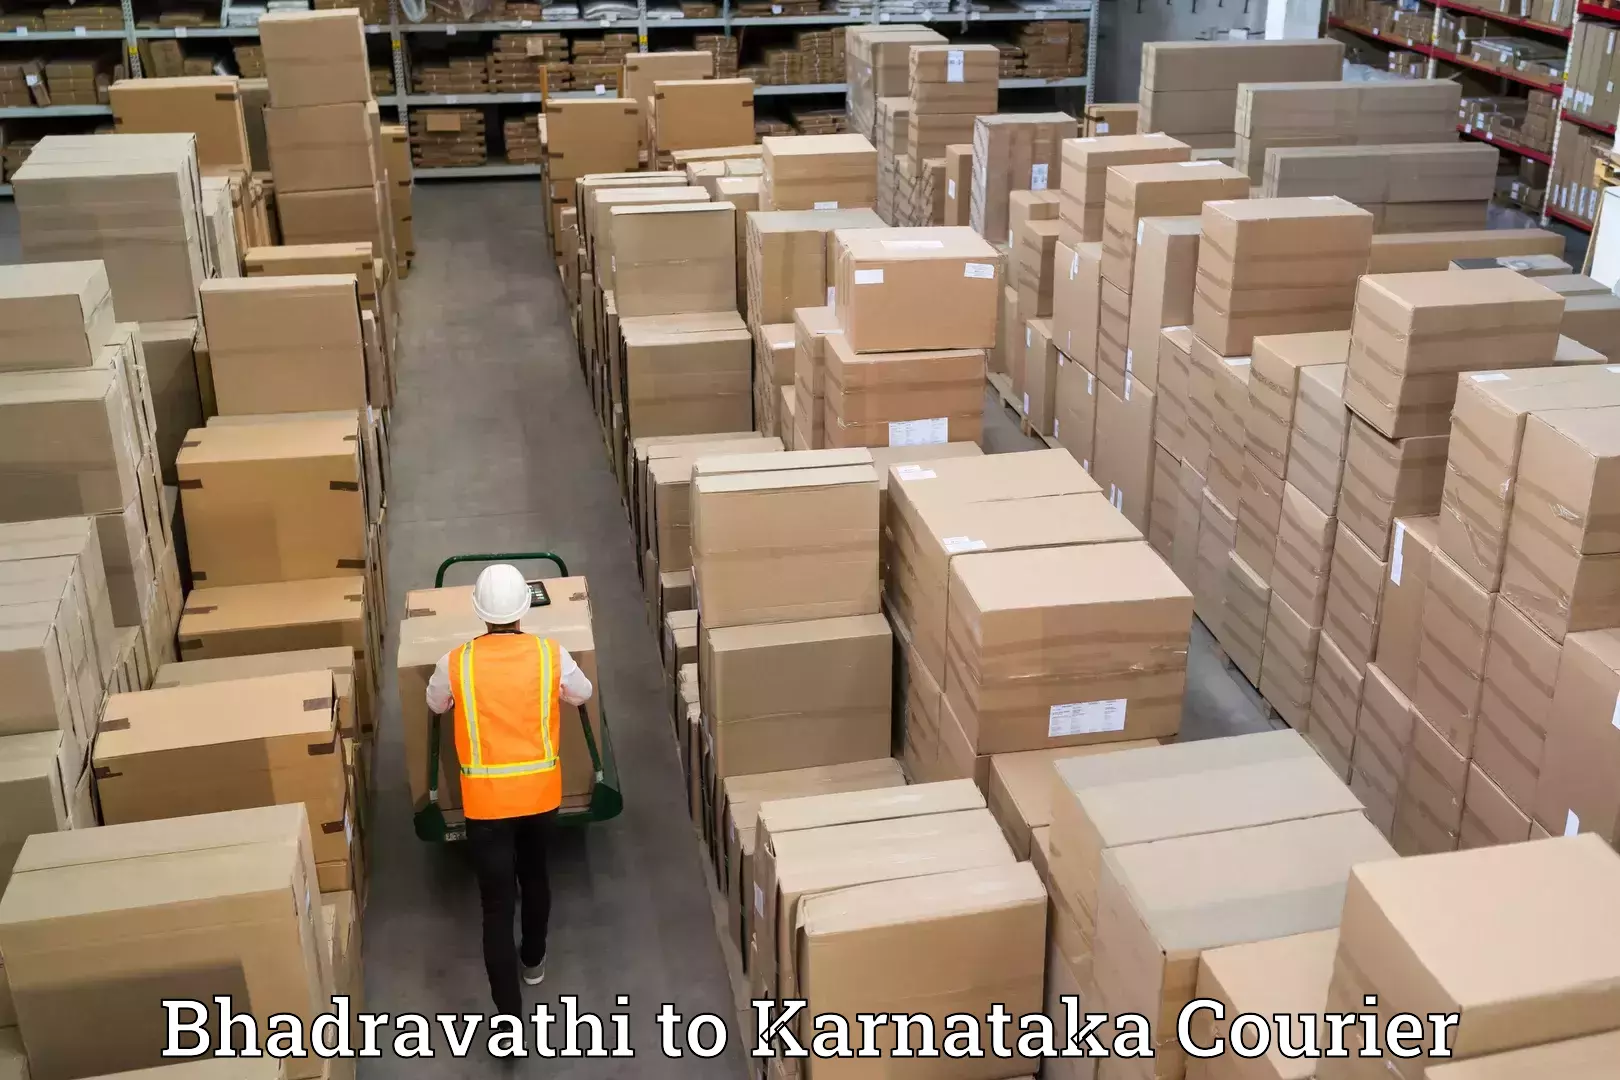 Professional furniture movers Bhadravathi to Bangalore